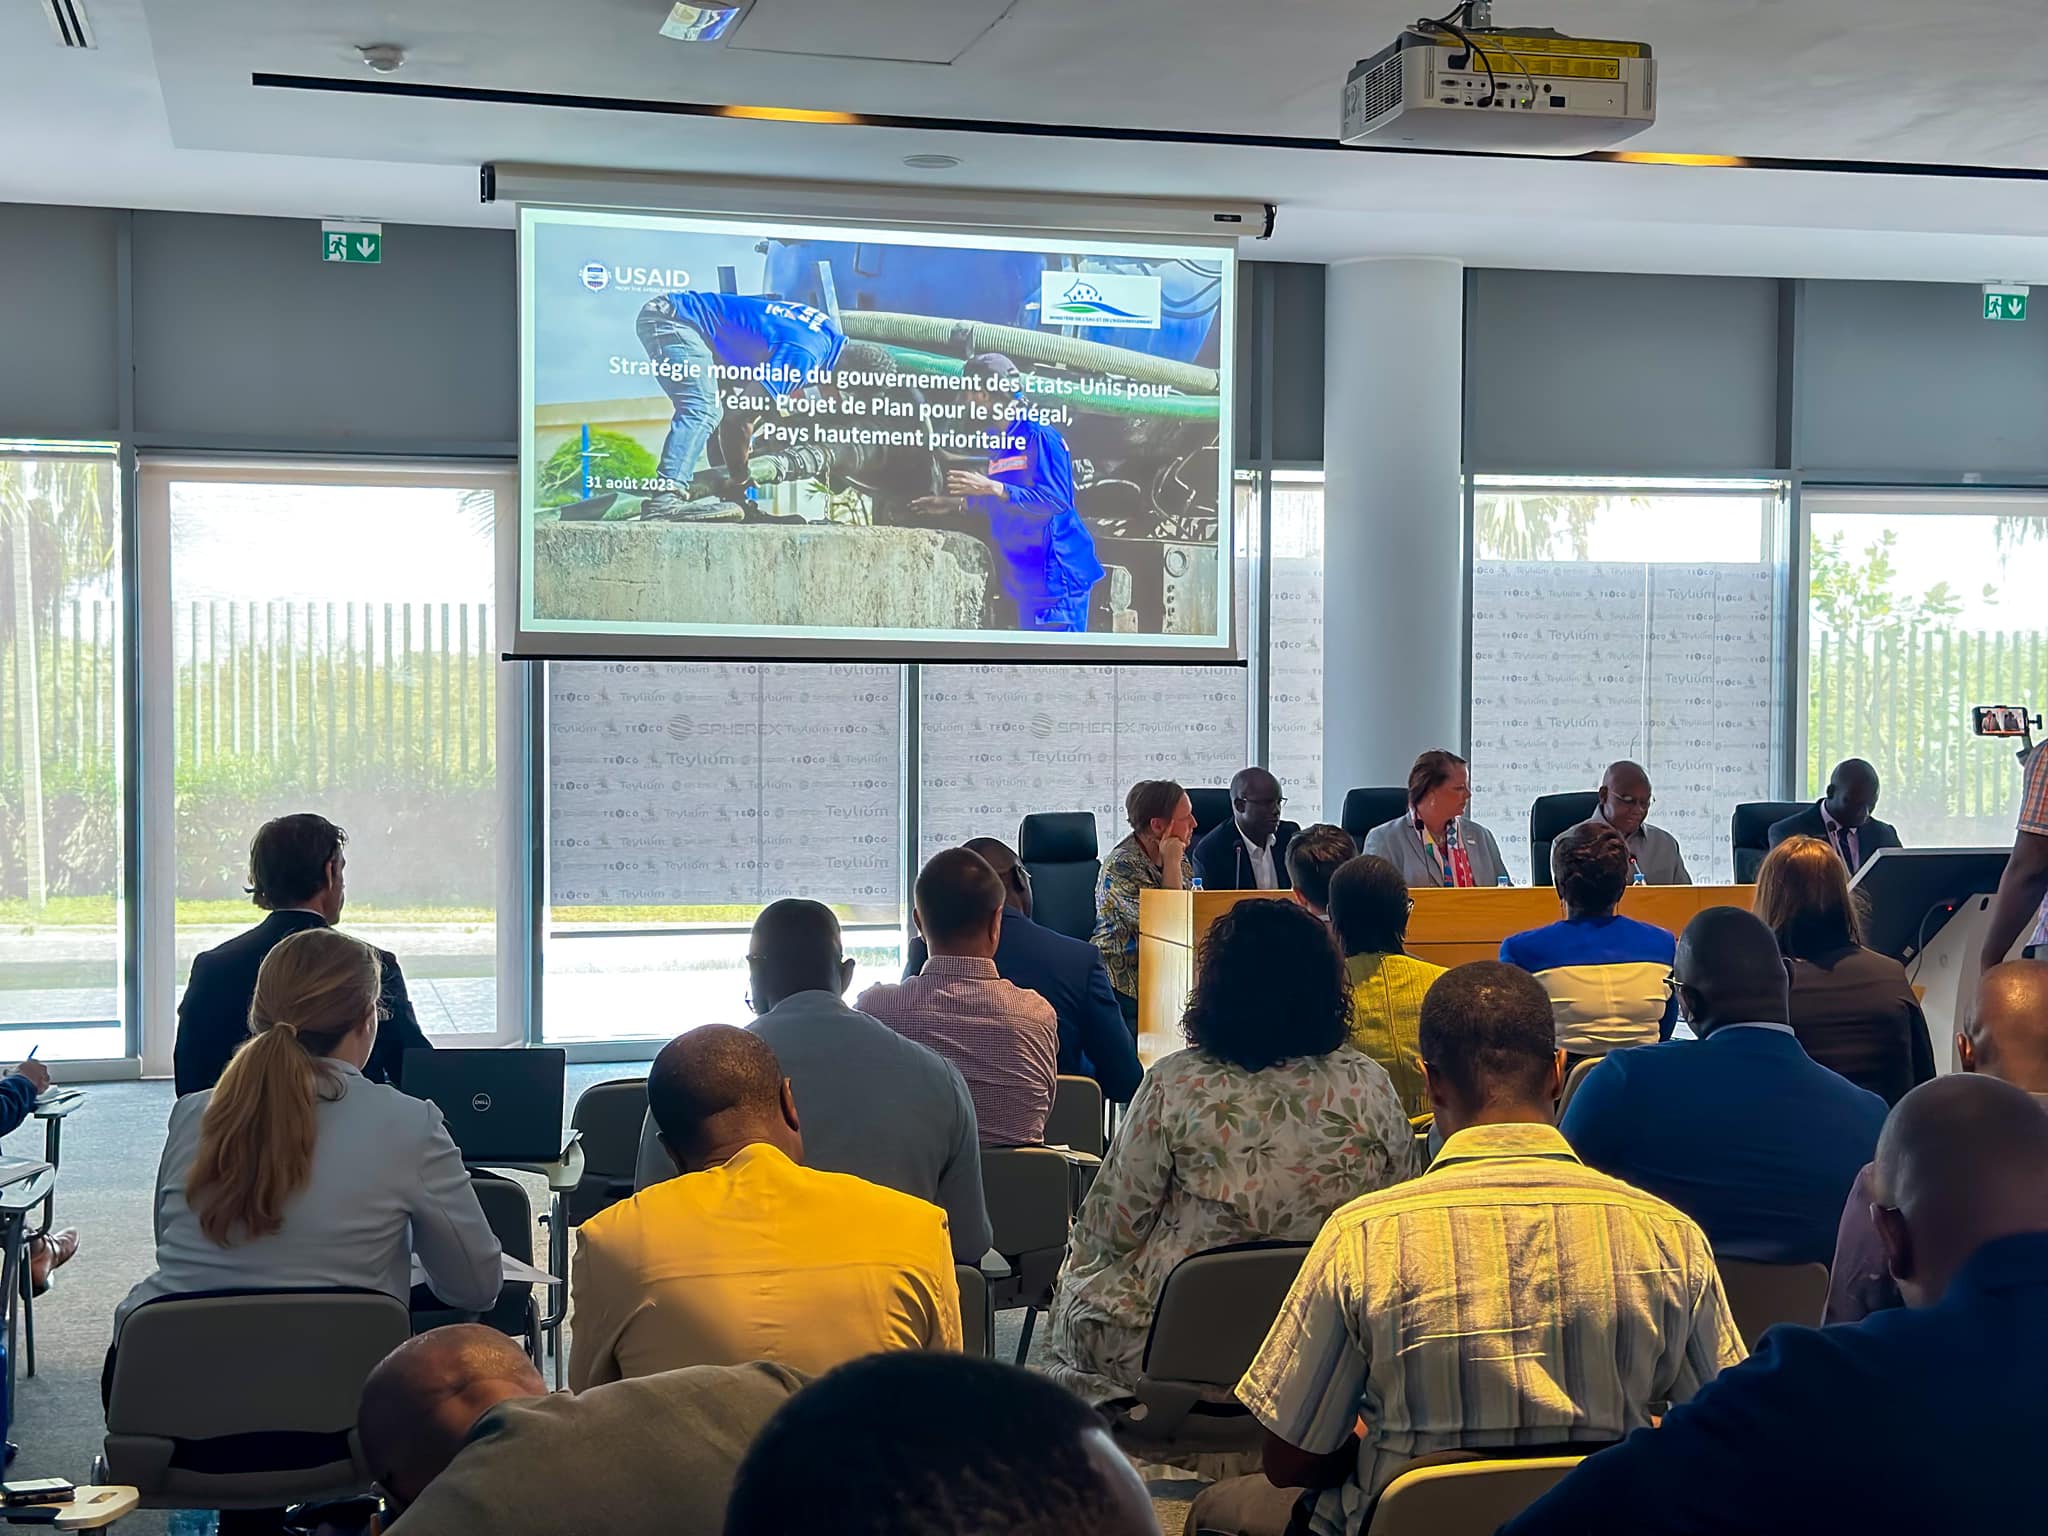 Atelier de présentation du Projet de Plan pour le Sénégal, Pays hautement prioritaire USAID